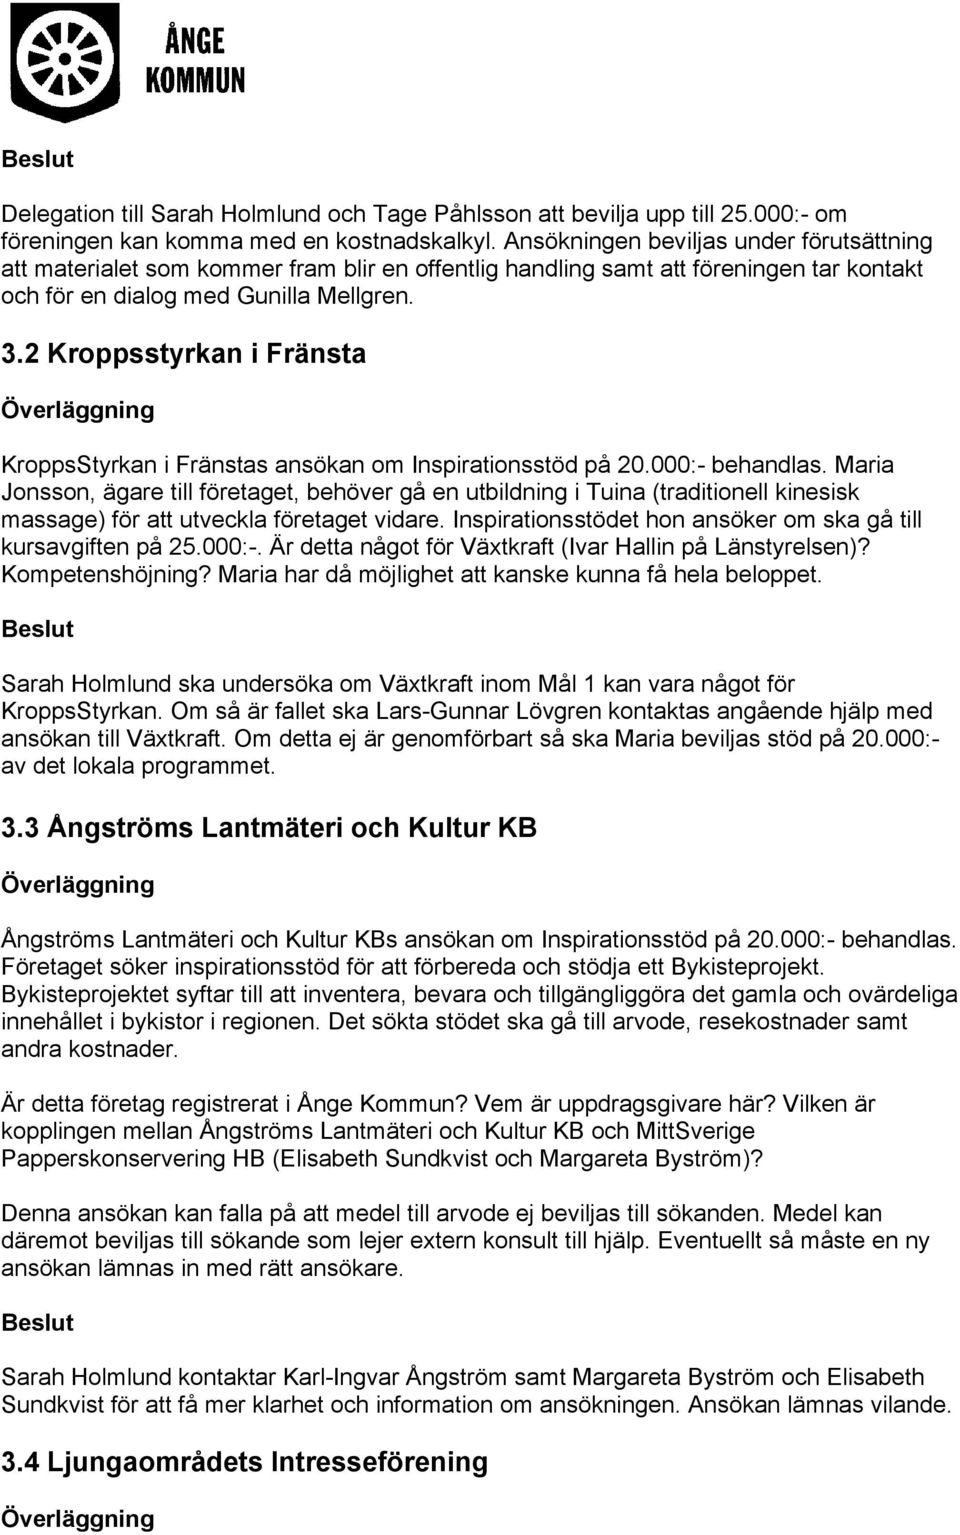 2 Kroppsstyrkan i Fränsta KroppsStyrkan i Fränstas ansökan om Inspirationsstöd på 20.000:- behandlas.